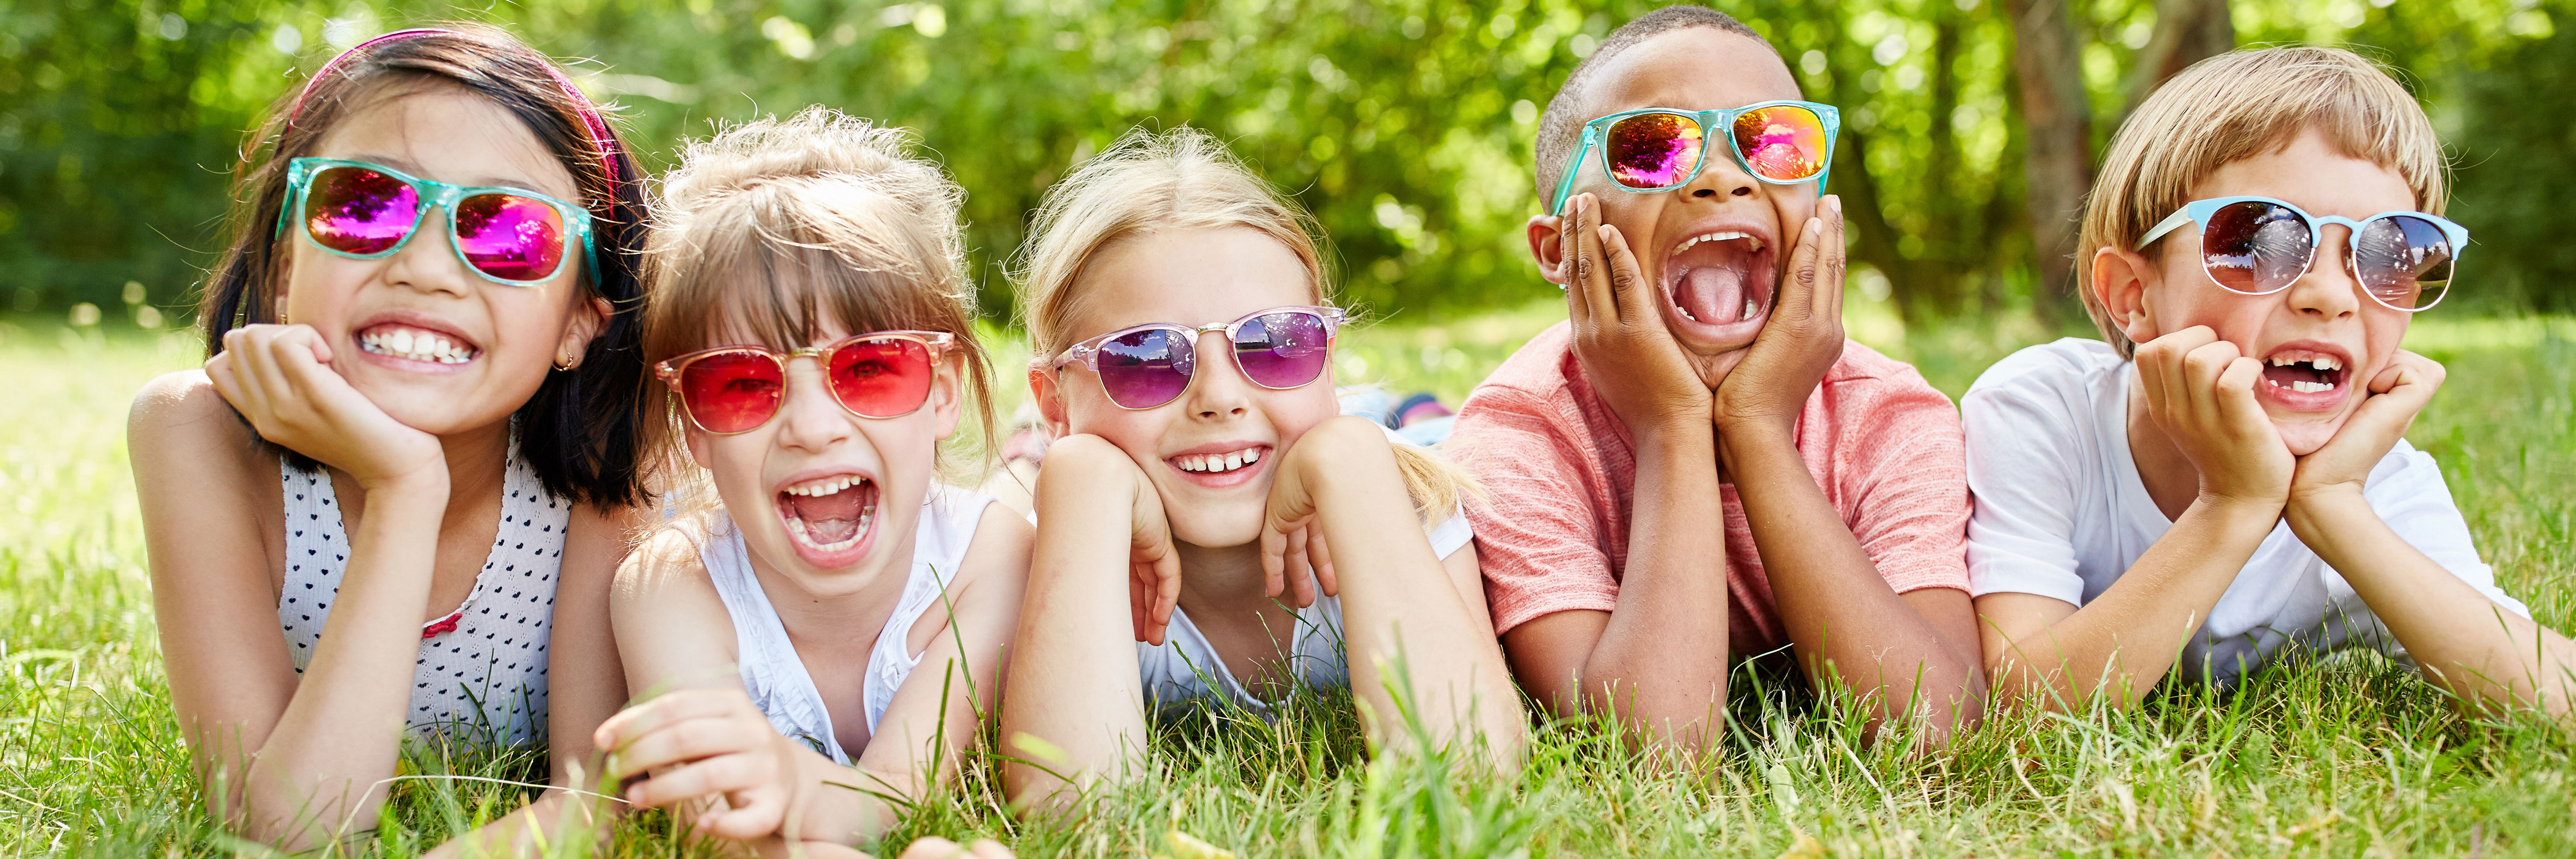 Crystal children. Kids Sunglasses. Sunglasses с надписями для детей. Фильтр ребенка на фото. Family in Glasses.